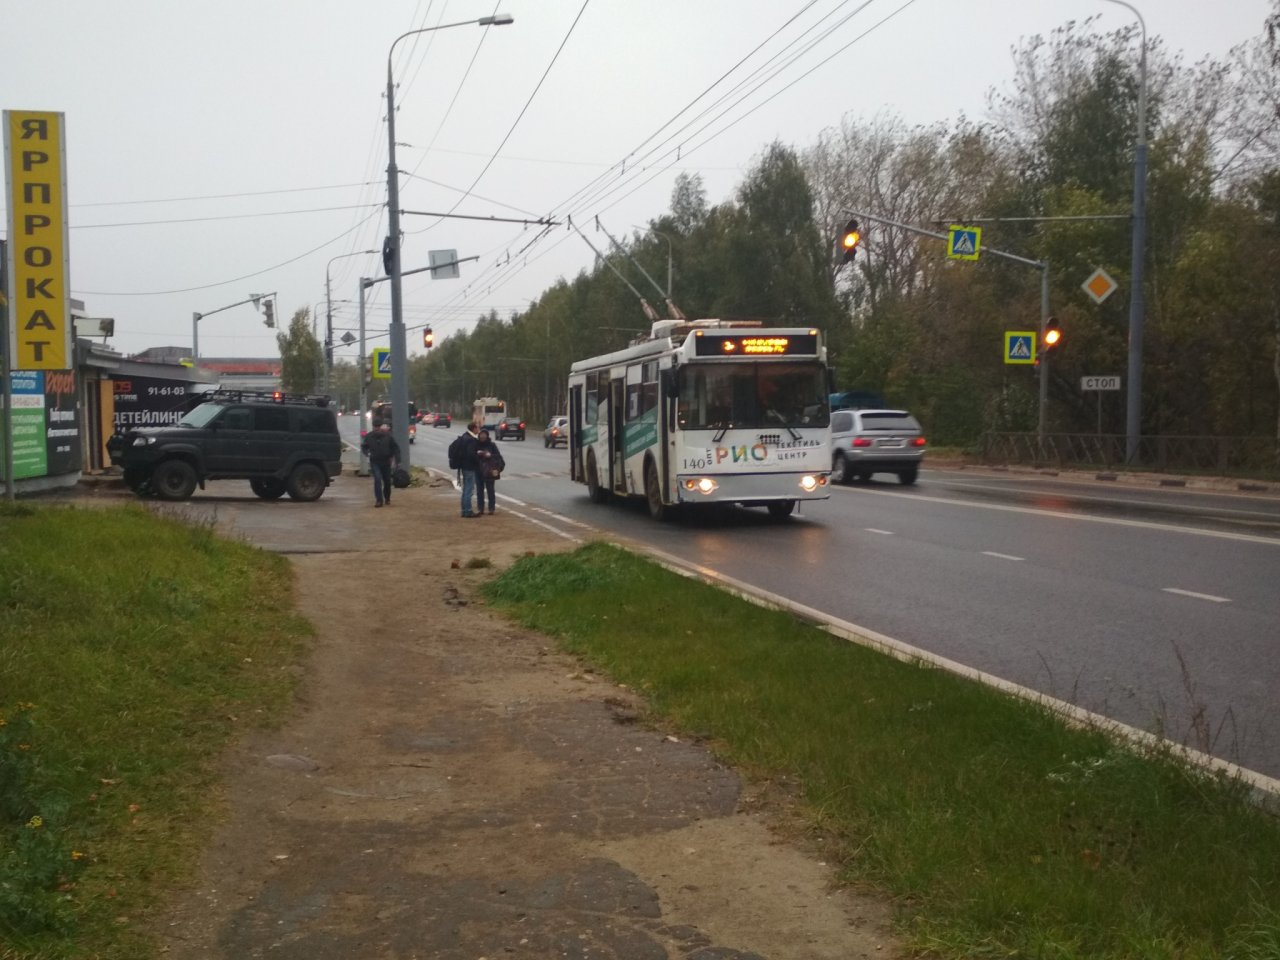 Ярославец чудом выжил при столкновении с троллейбусом